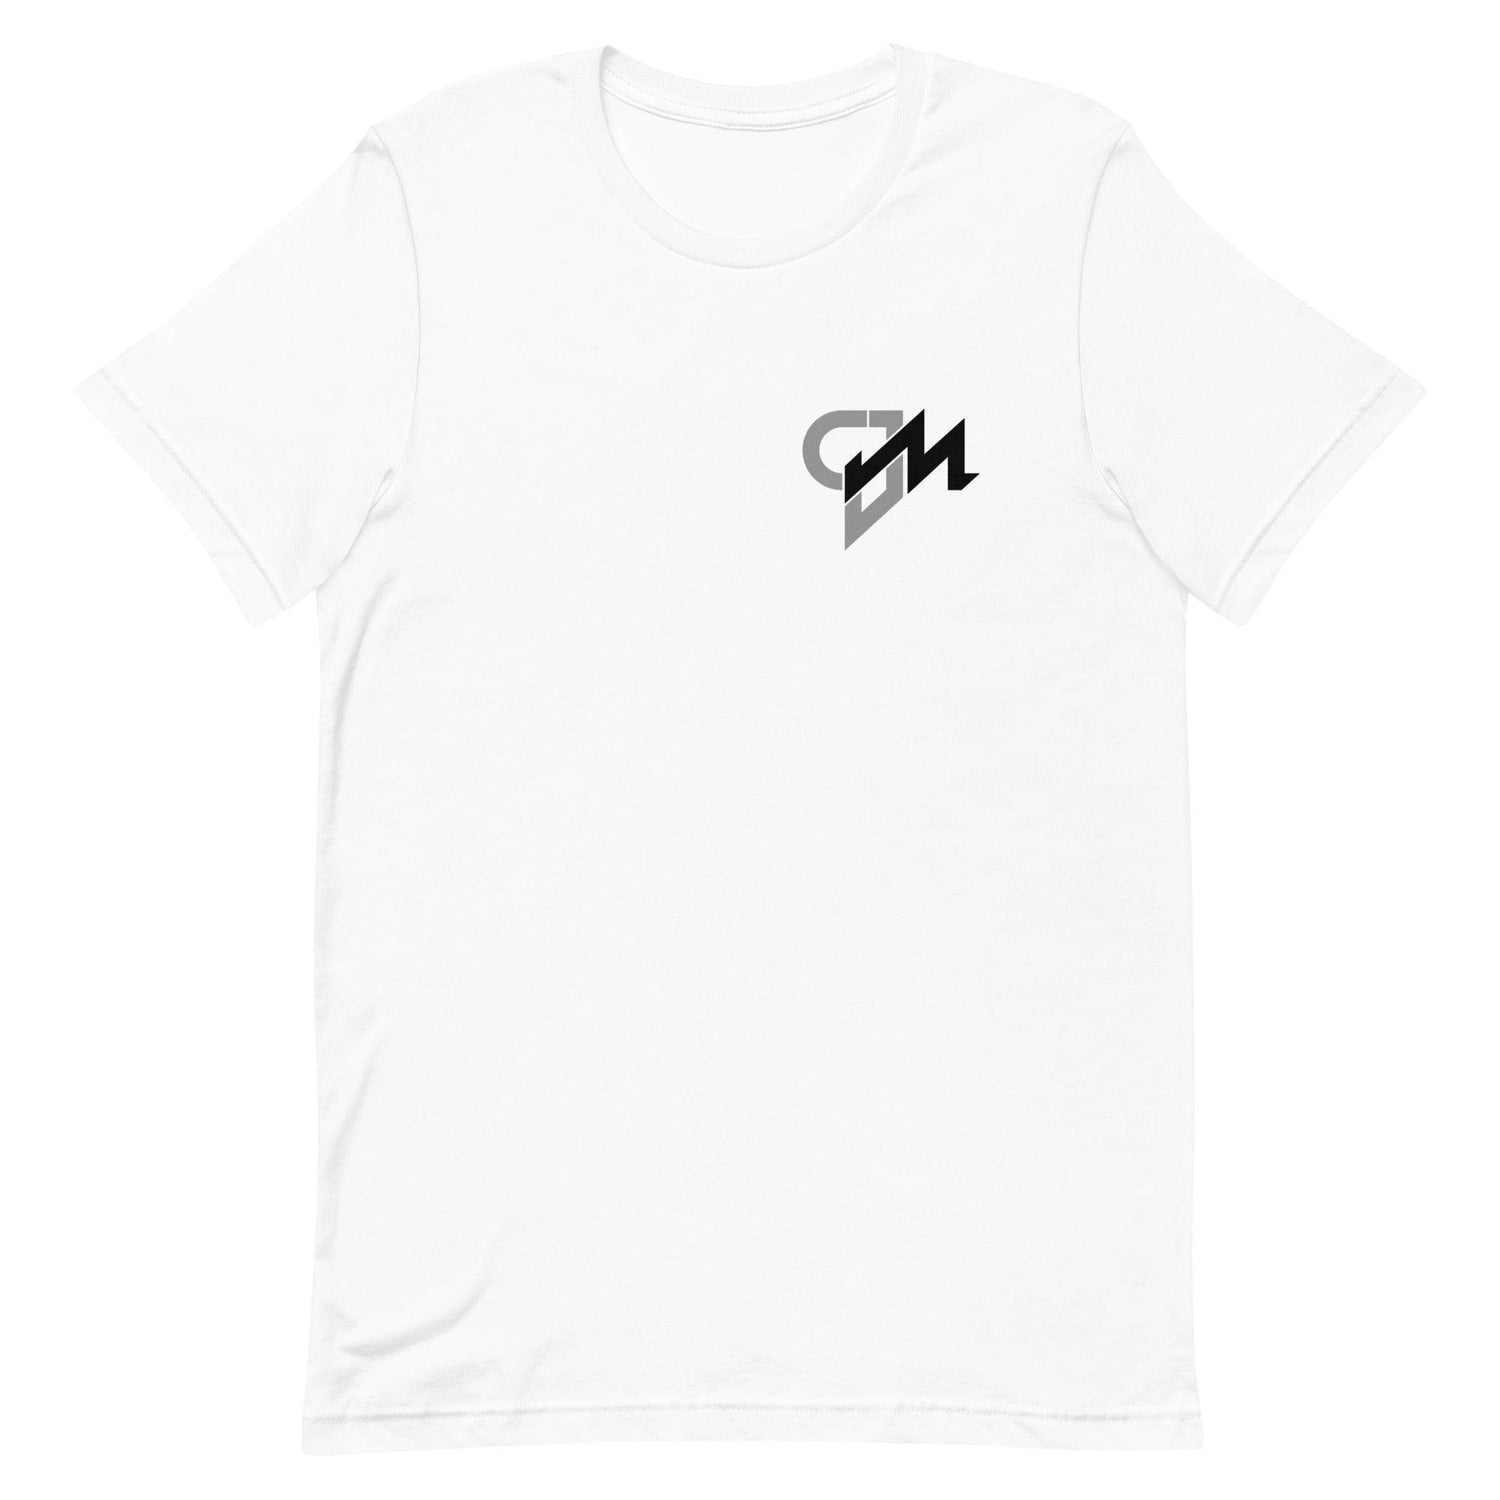 CJ Marable "Essential" t-shirt - Fan Arch